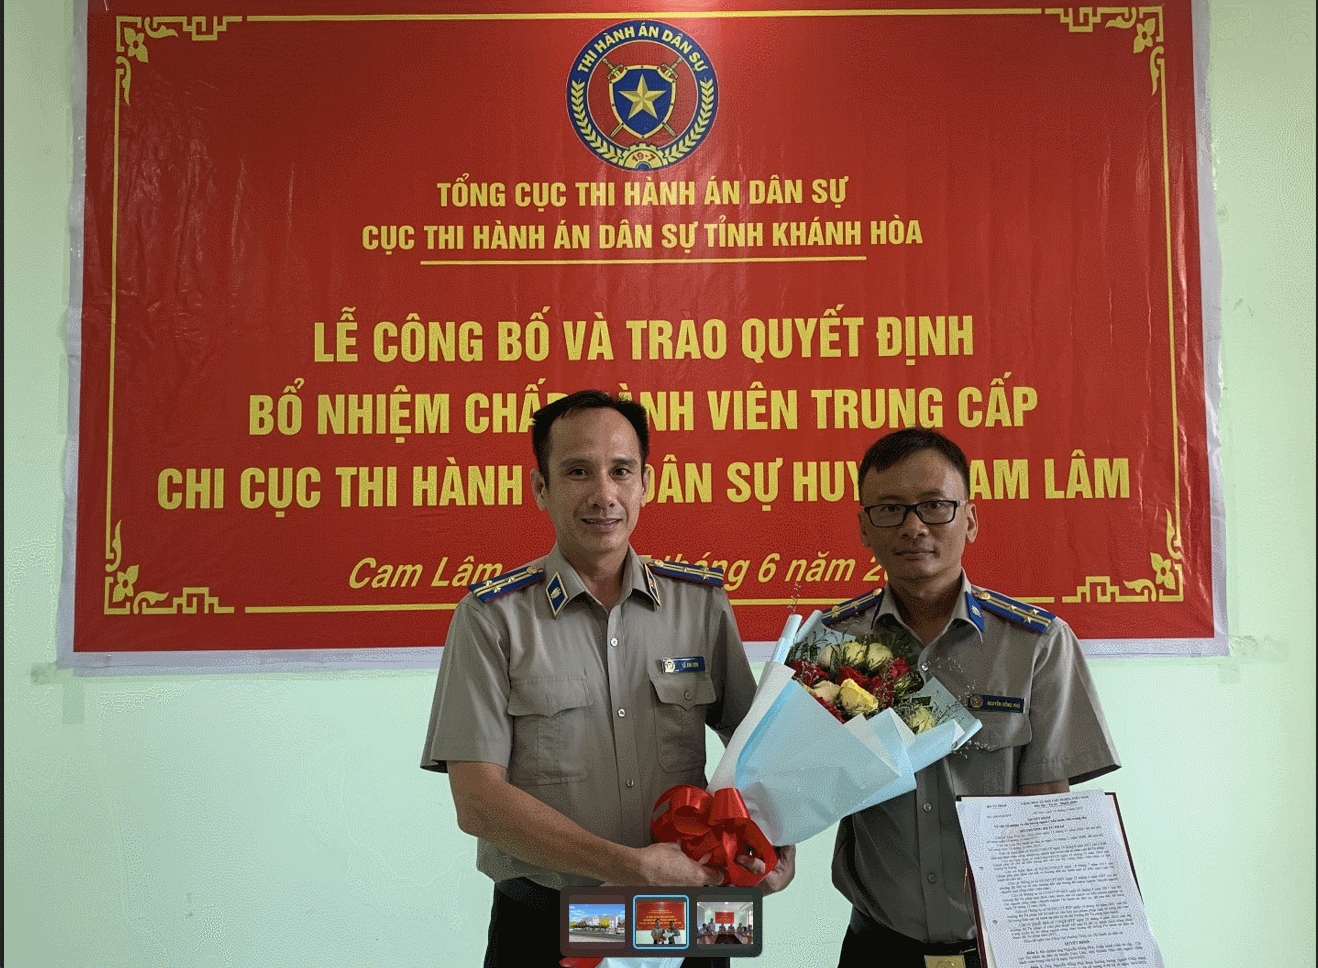 Chi cục Thi hành án dân sự huyện Cam Lâm tổ chức Lễ công bố và trao quyết định bổ nhiệm Chấp hành viên trung cấp